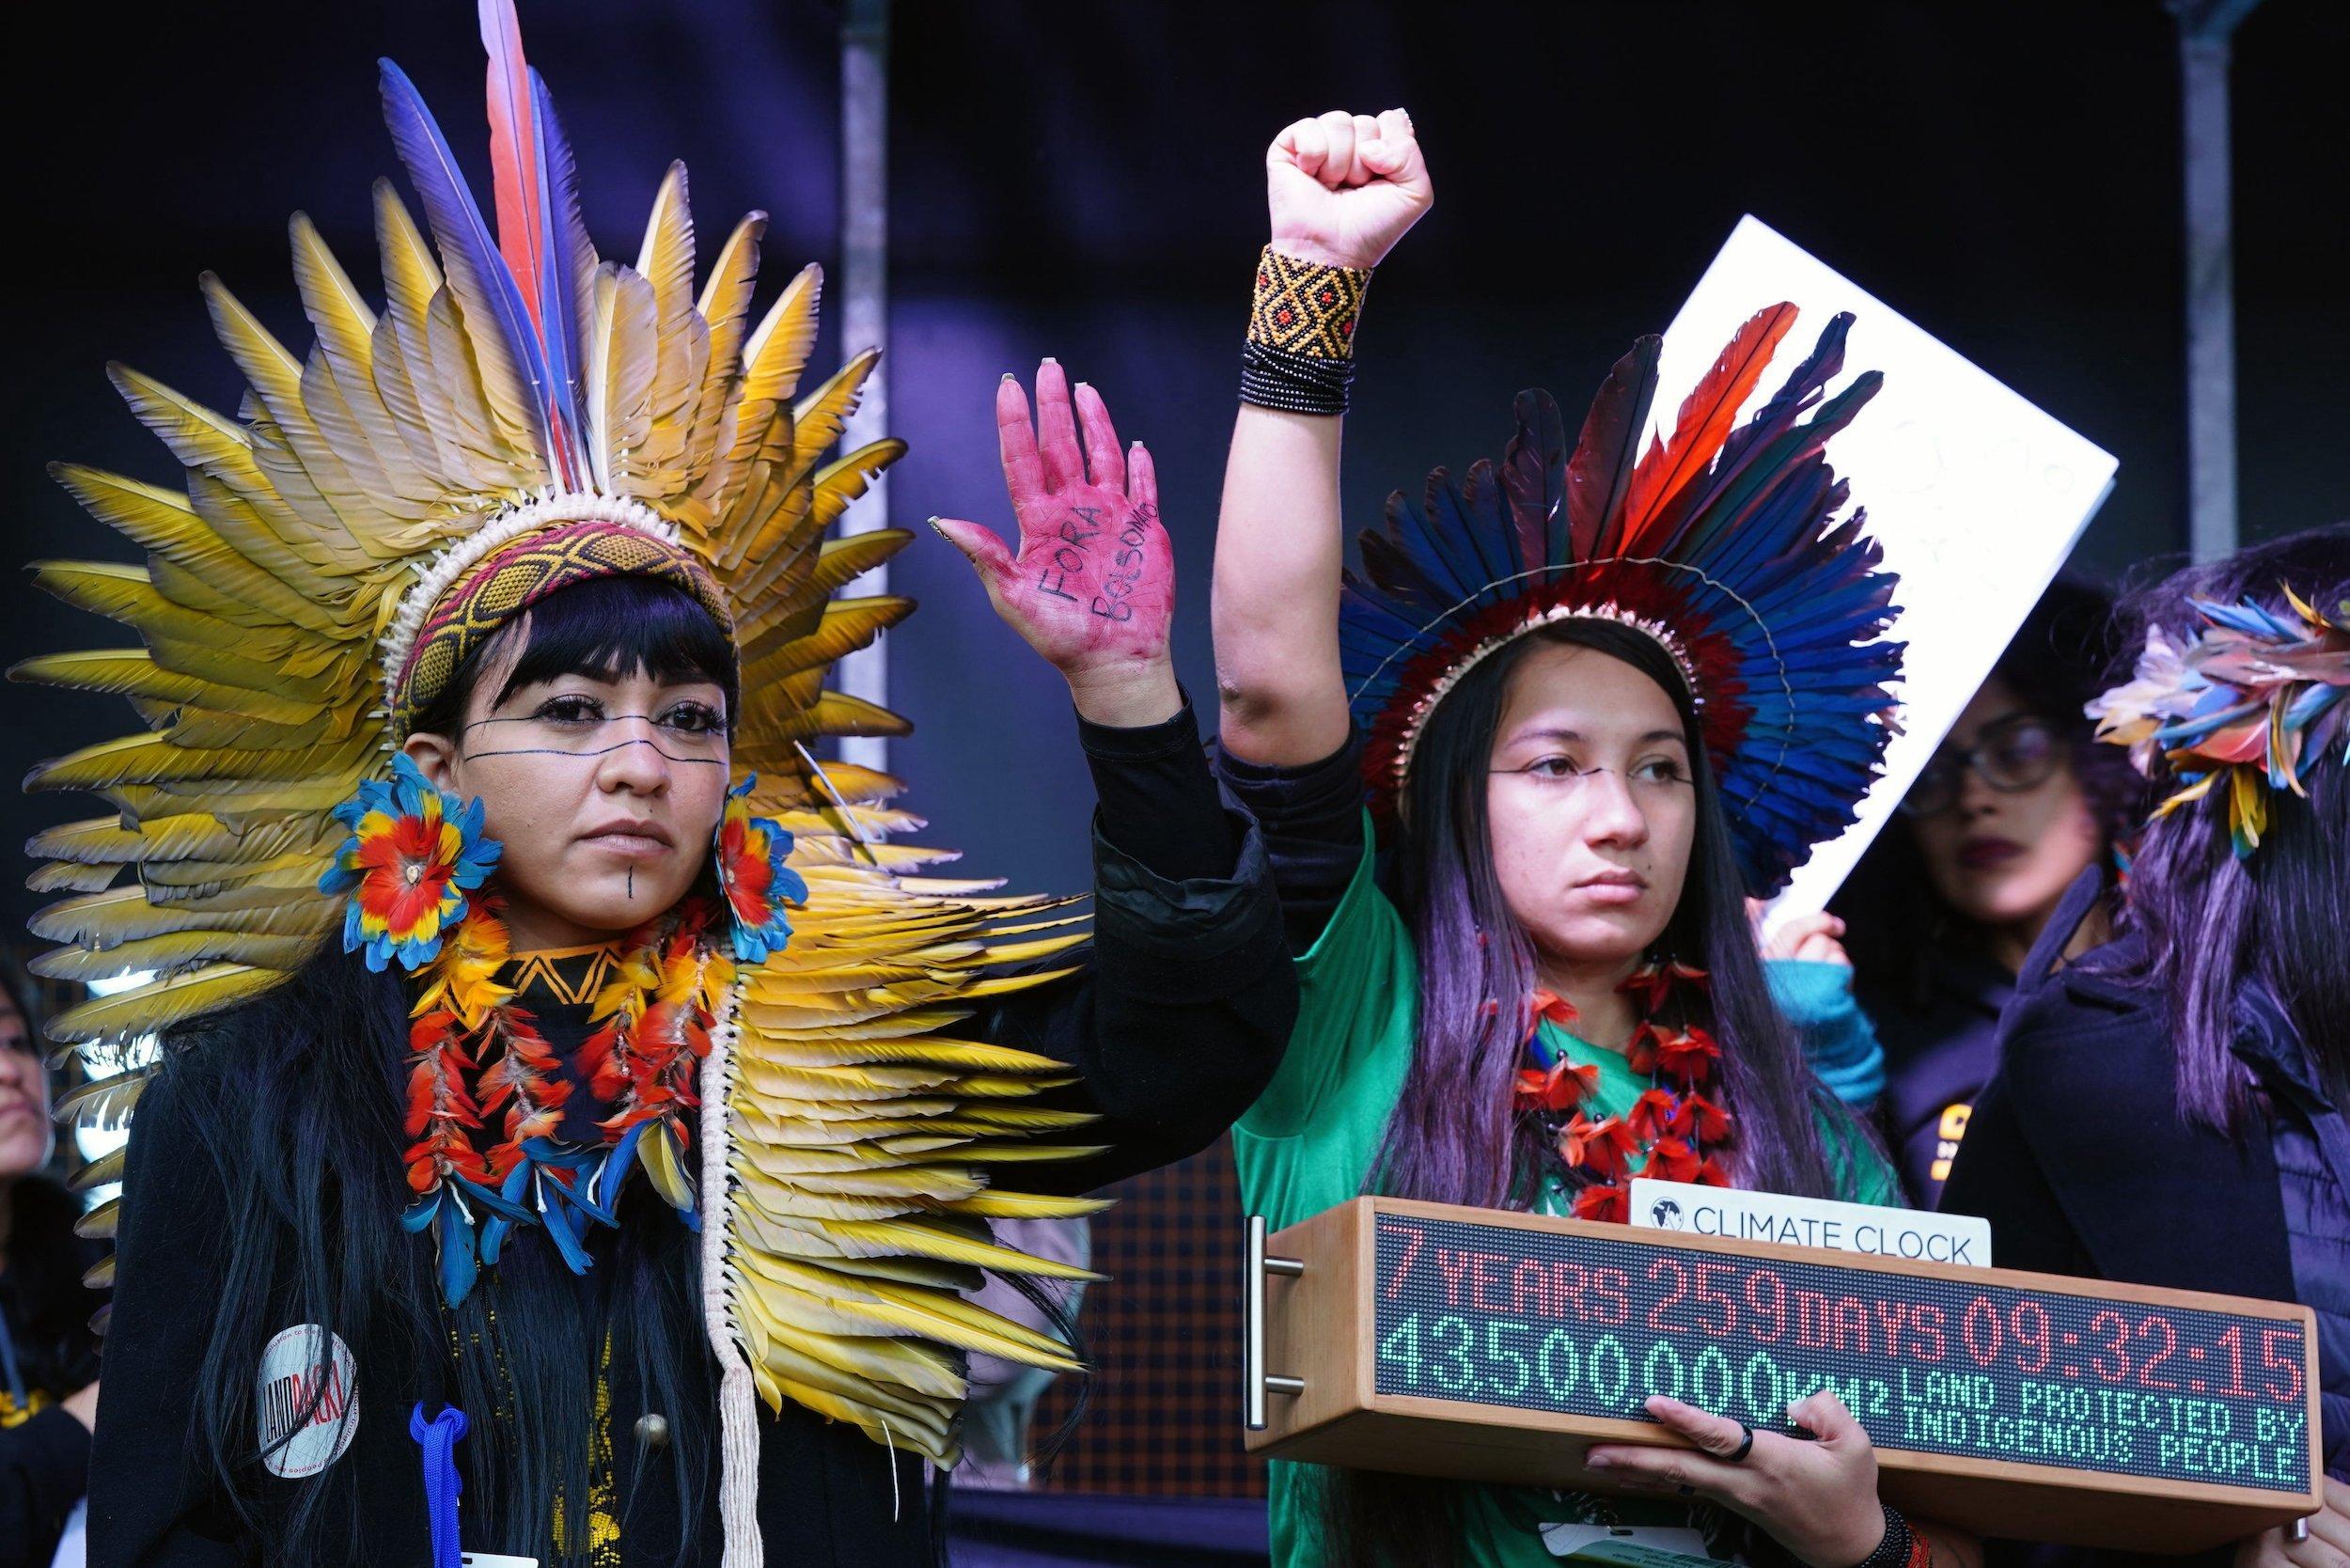 Zwei junge Frauen in indigener Tracht mit geballten Fäusten auf einer Bühne.